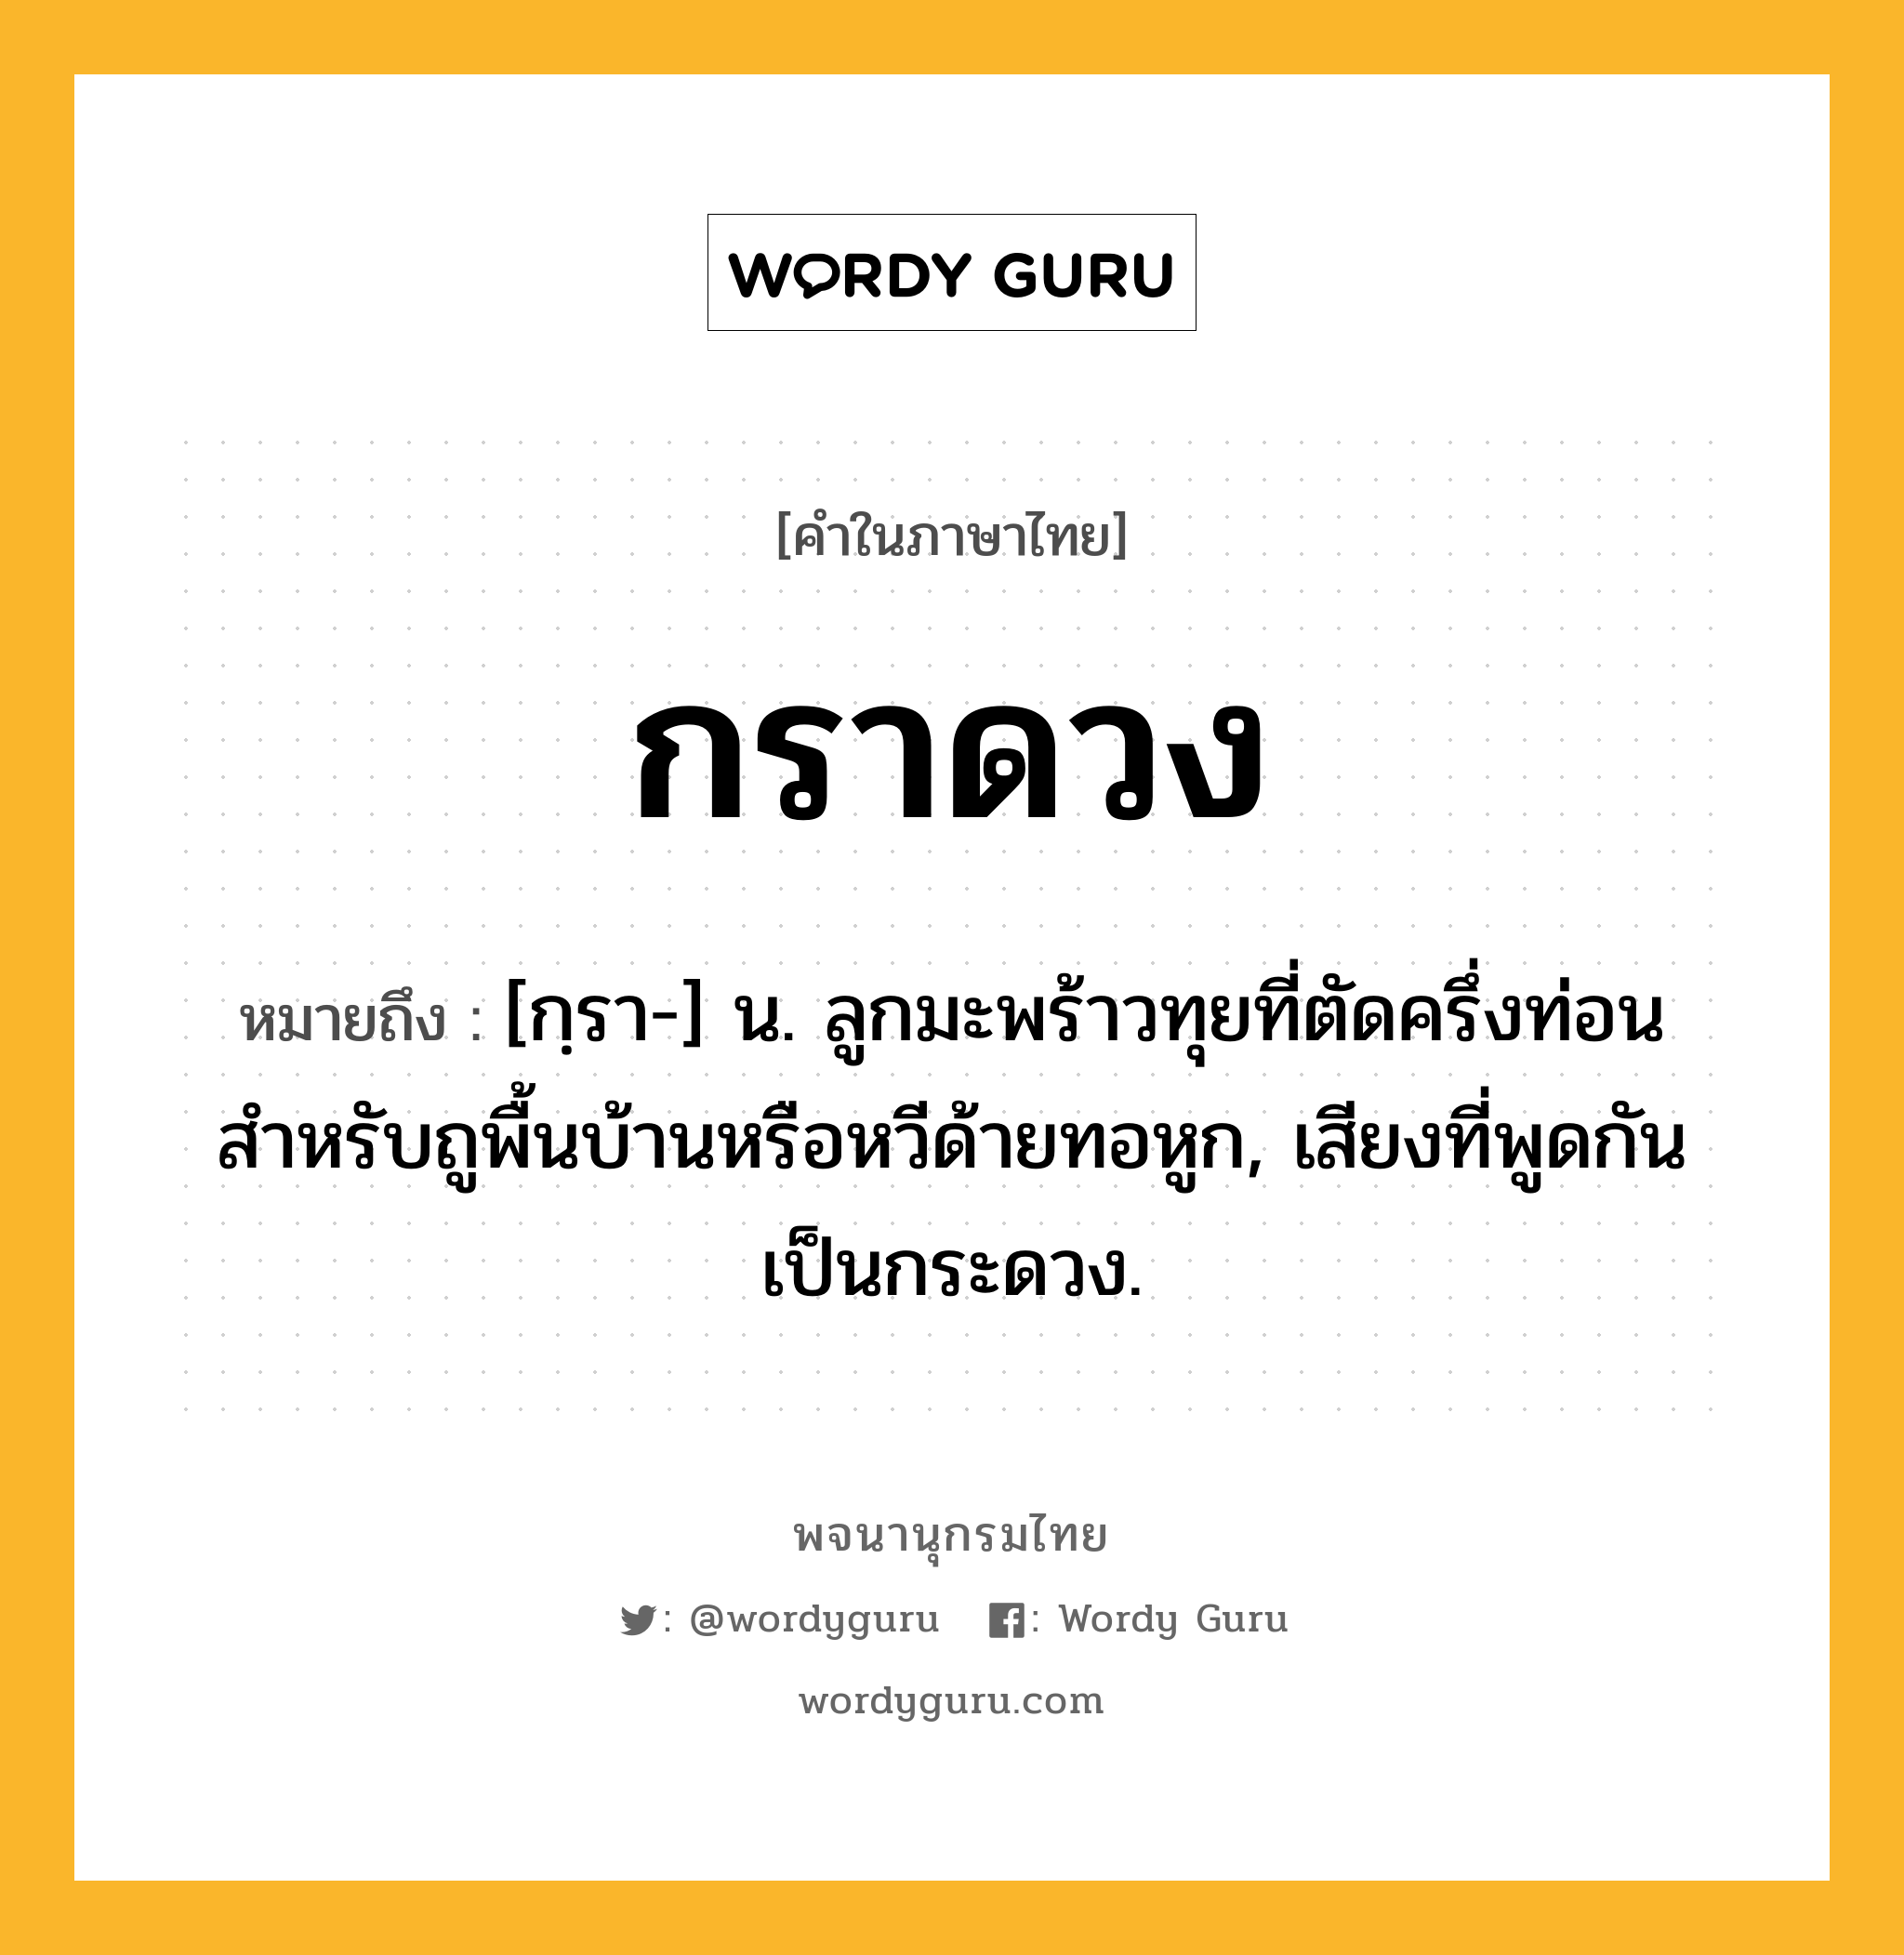 กราดวง ความหมาย หมายถึงอะไร?, คำในภาษาไทย กราดวง หมายถึง [กฺรา-] น. ลูกมะพร้าวทุยที่ตัดครึ่งท่อน สําหรับถูพื้นบ้านหรือหวีด้ายทอหูก, เสียงที่พูดกันเป็นกระดวง.